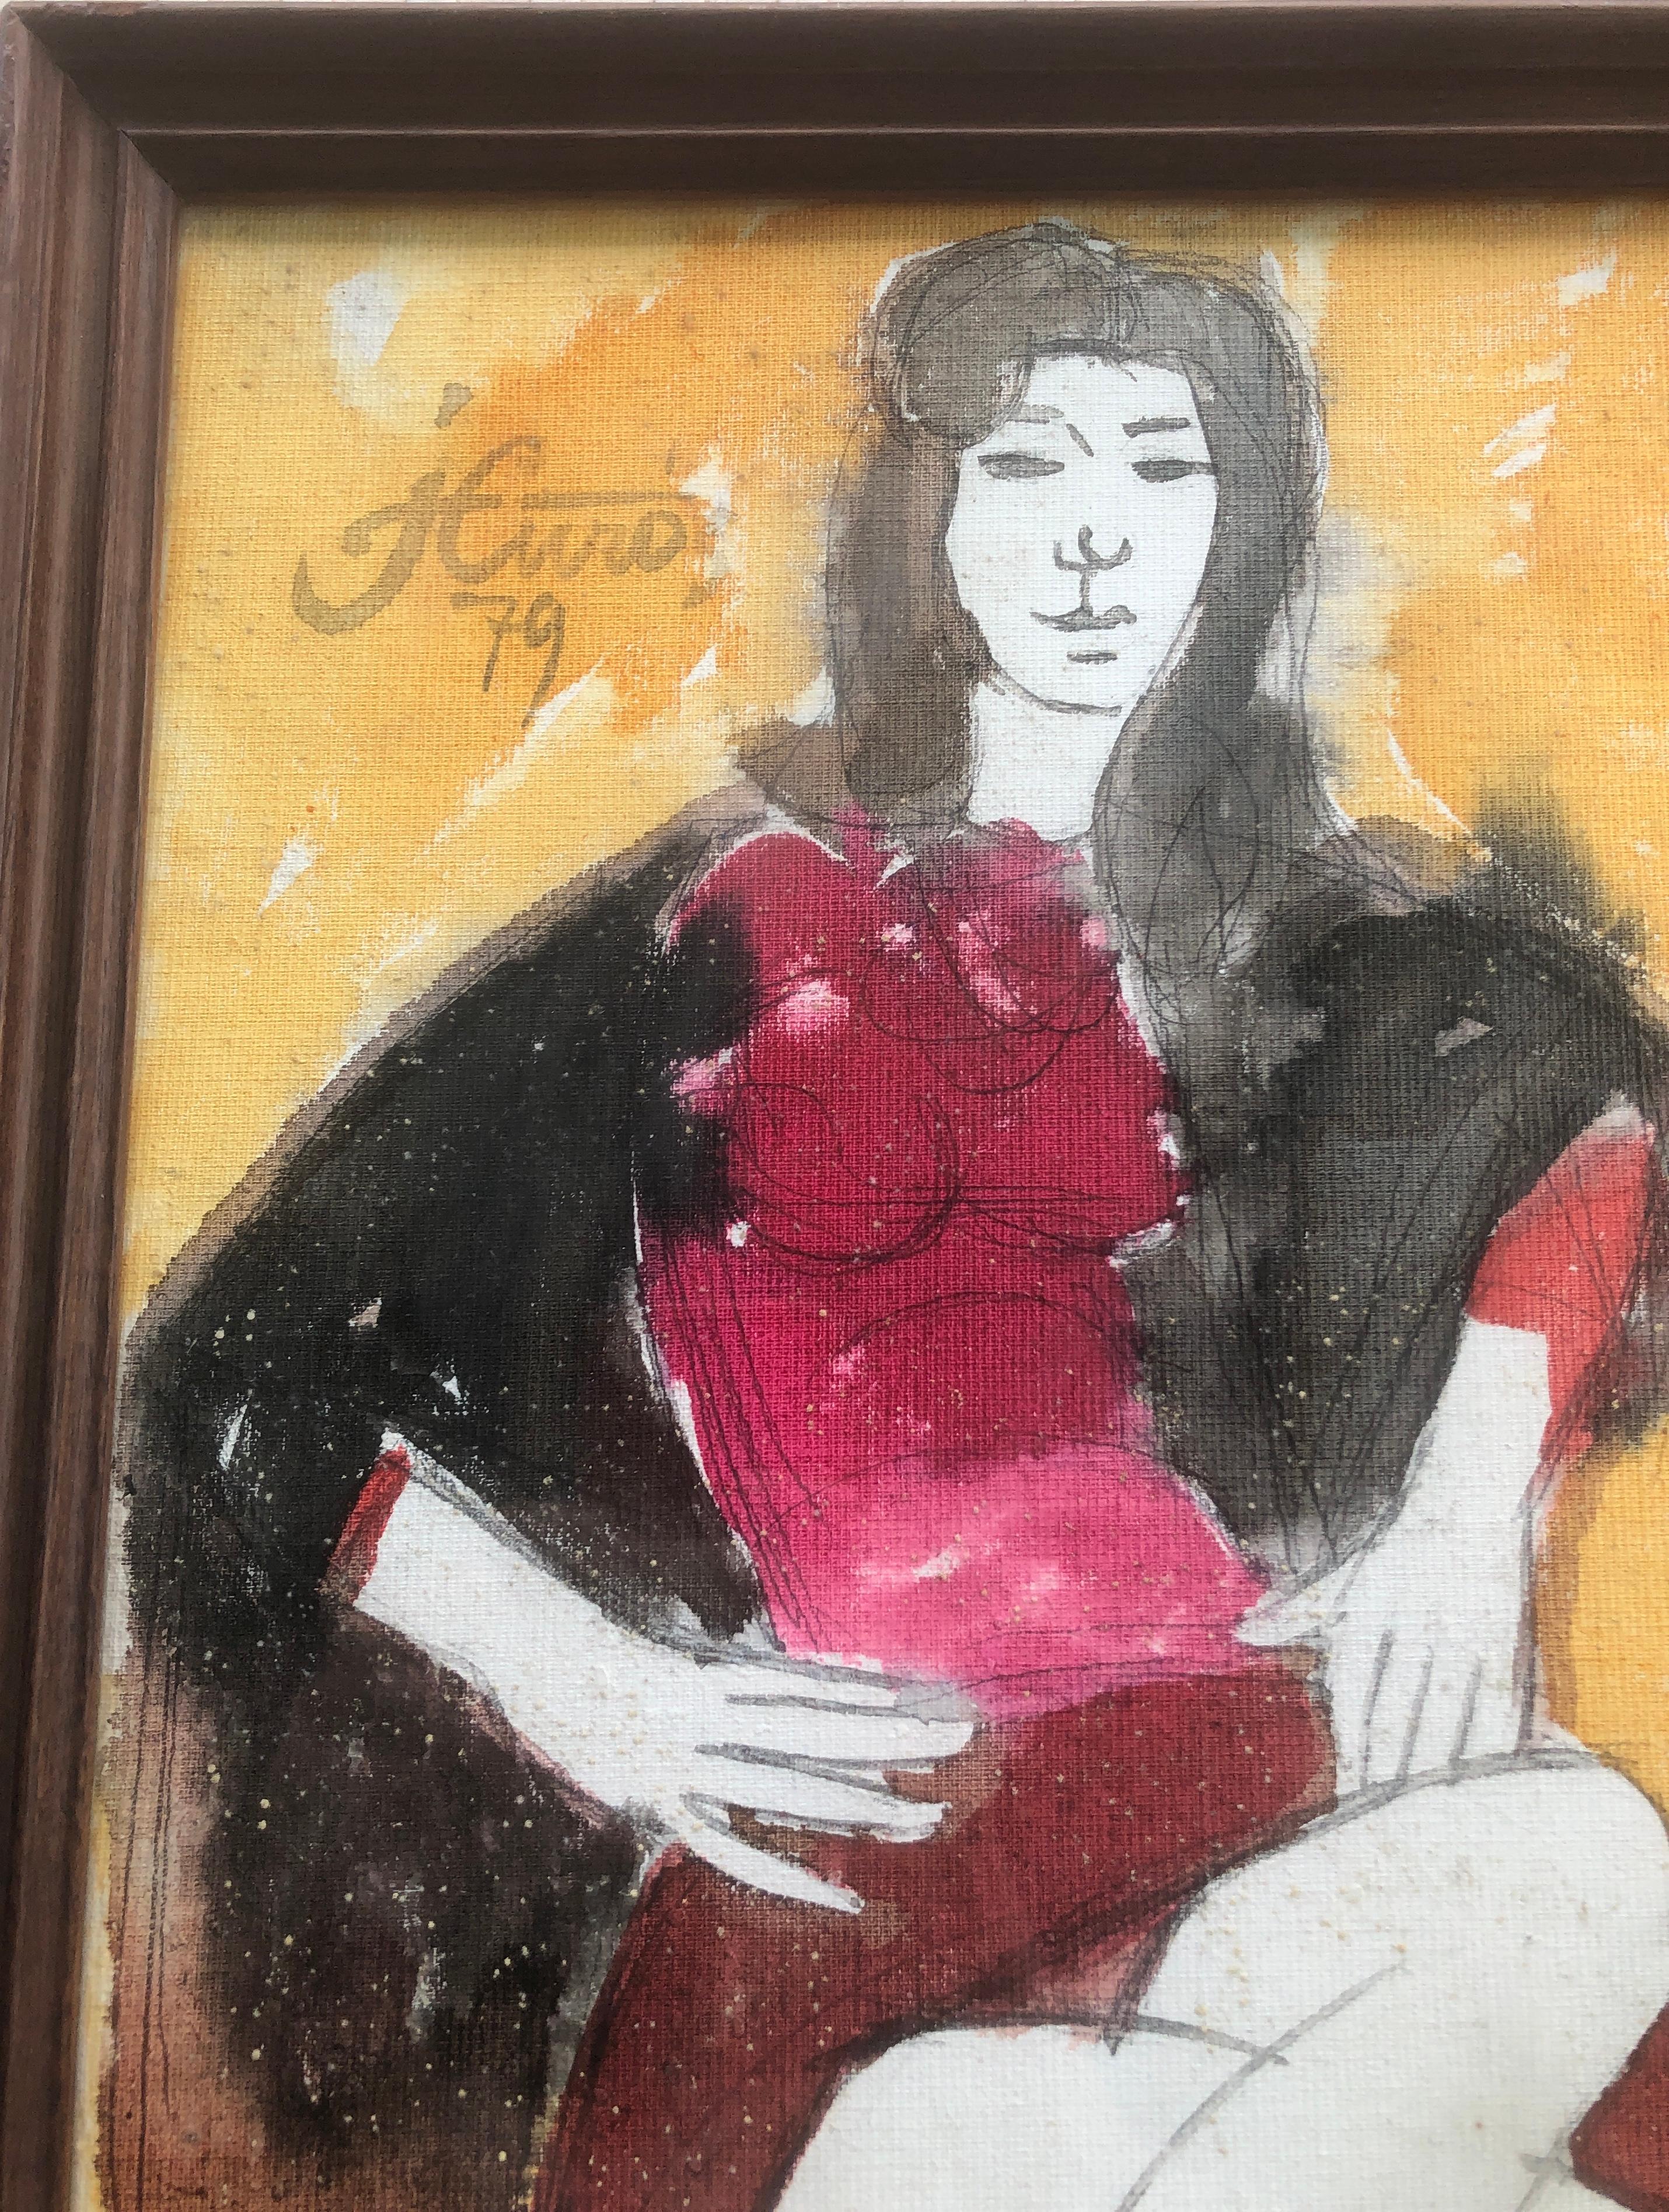 Frau posiert in Mischtechnik Gemälde – Painting von Jordi Curos